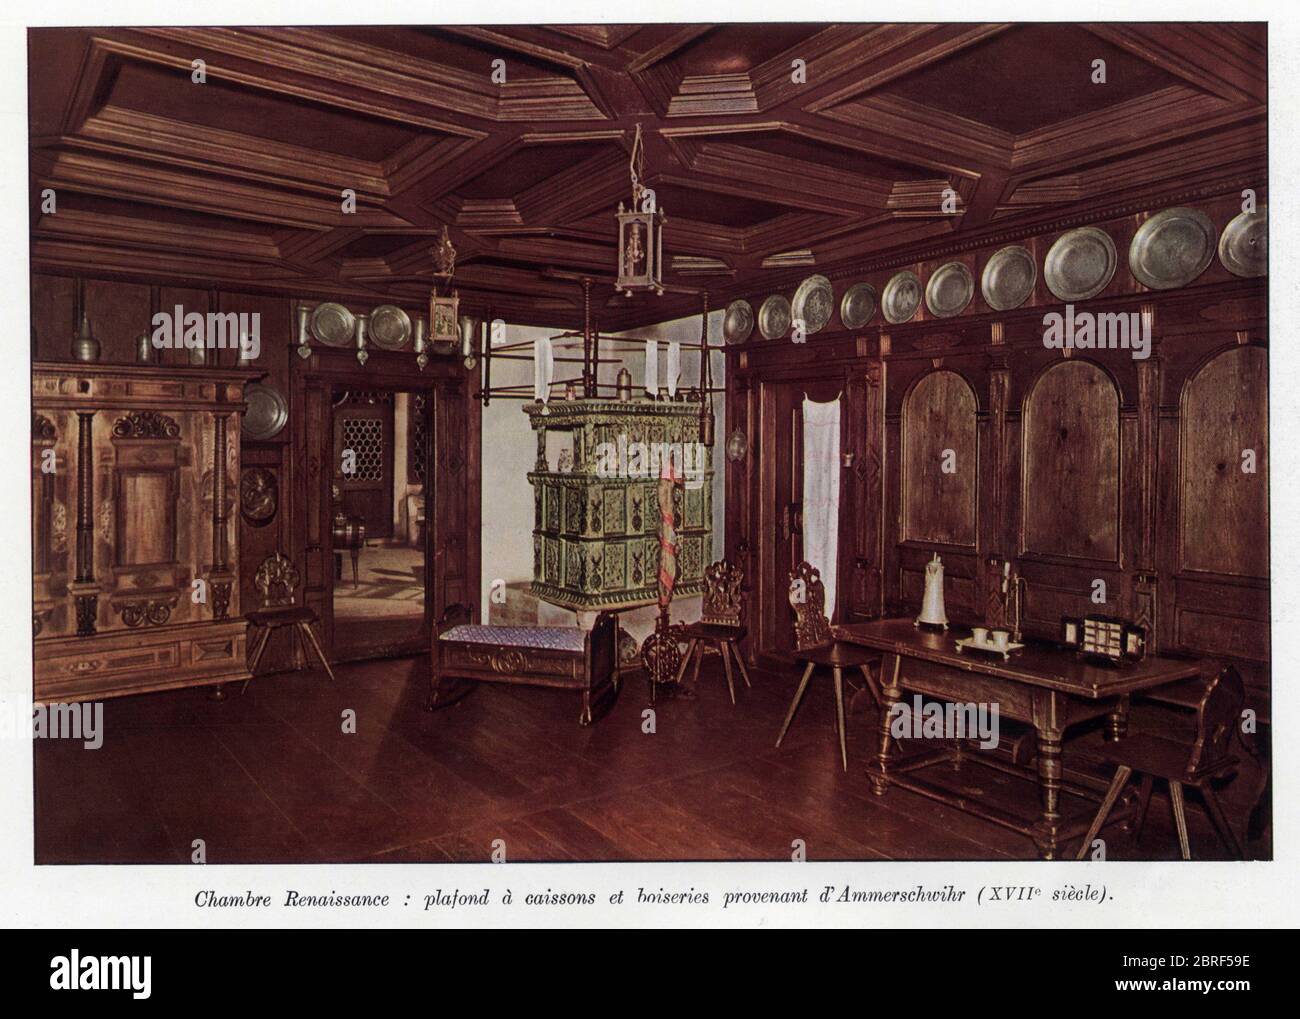 L'Art populaire en Alsace.Chambre Renaissance:plafond à caissons et boiseries provenant d'Ammerschwihr.XVIIe siècle. Stockfoto